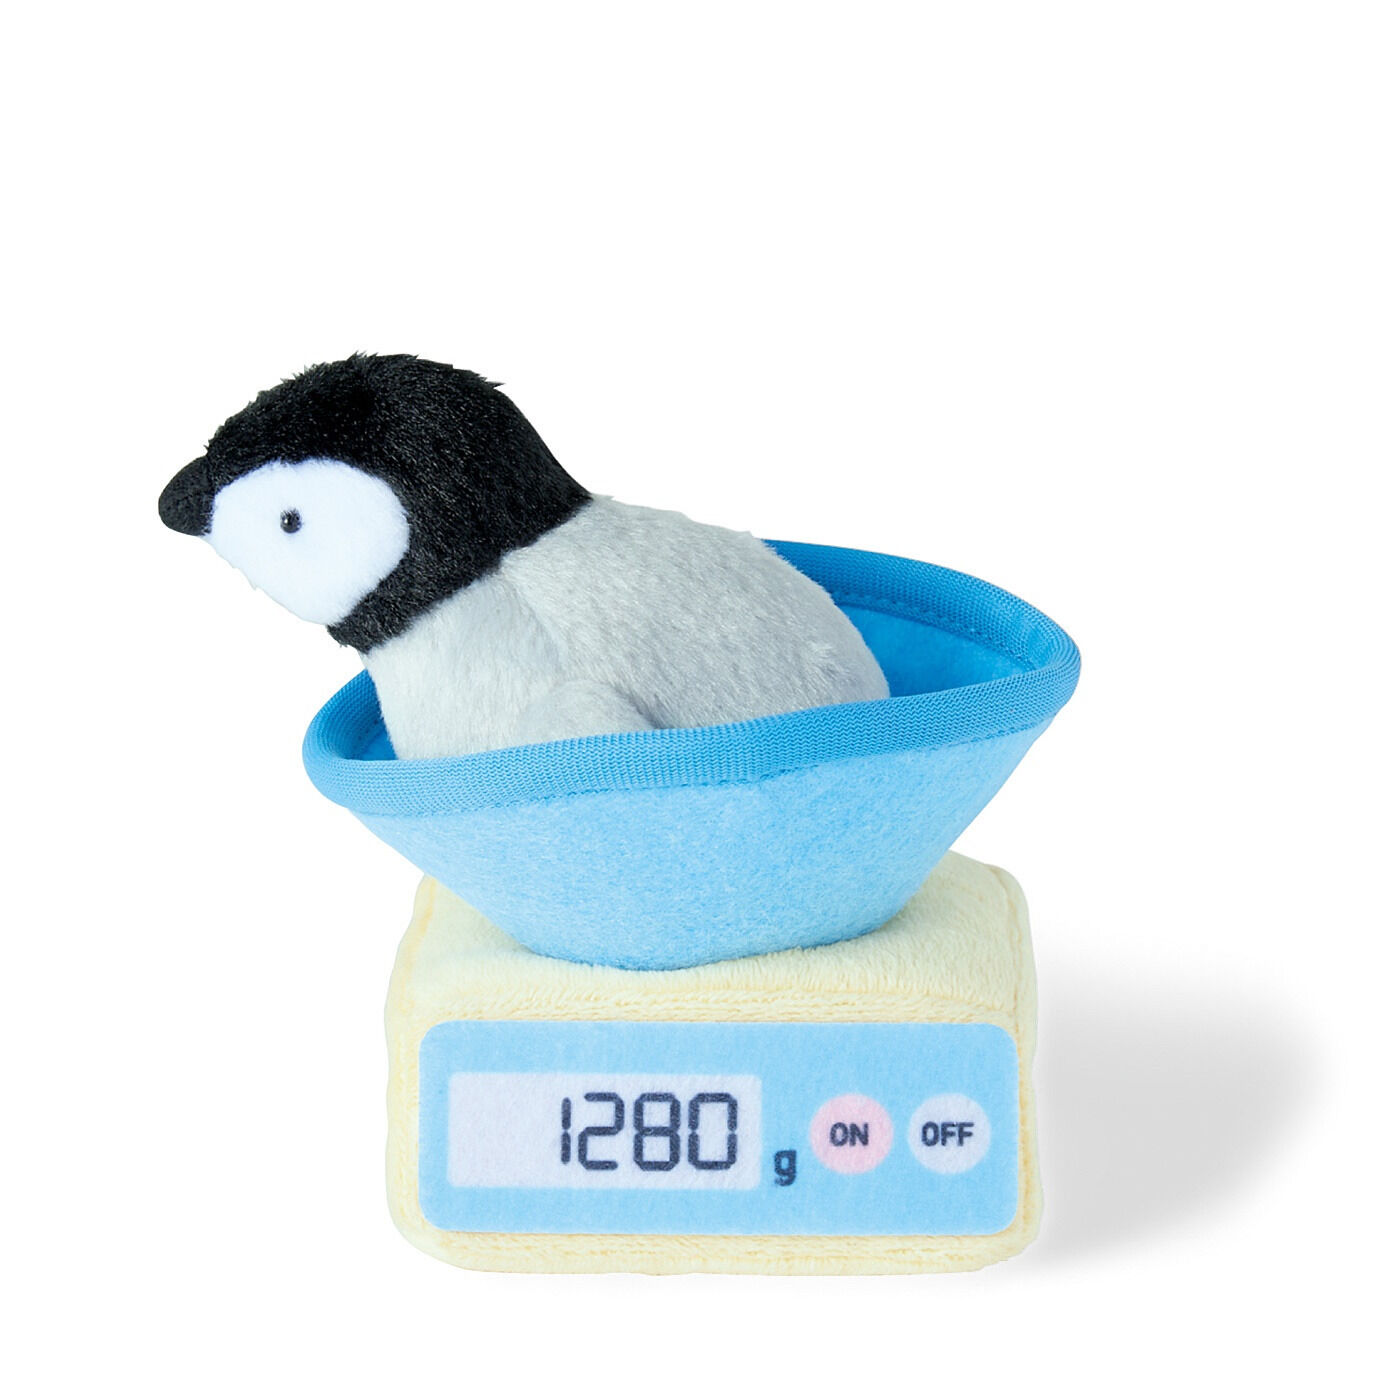 Real Stock|YOU+MORE!　動物園の赤ちゃんたちの体重測定キーマスコット|1:〈赤ちゃんペンギン〉